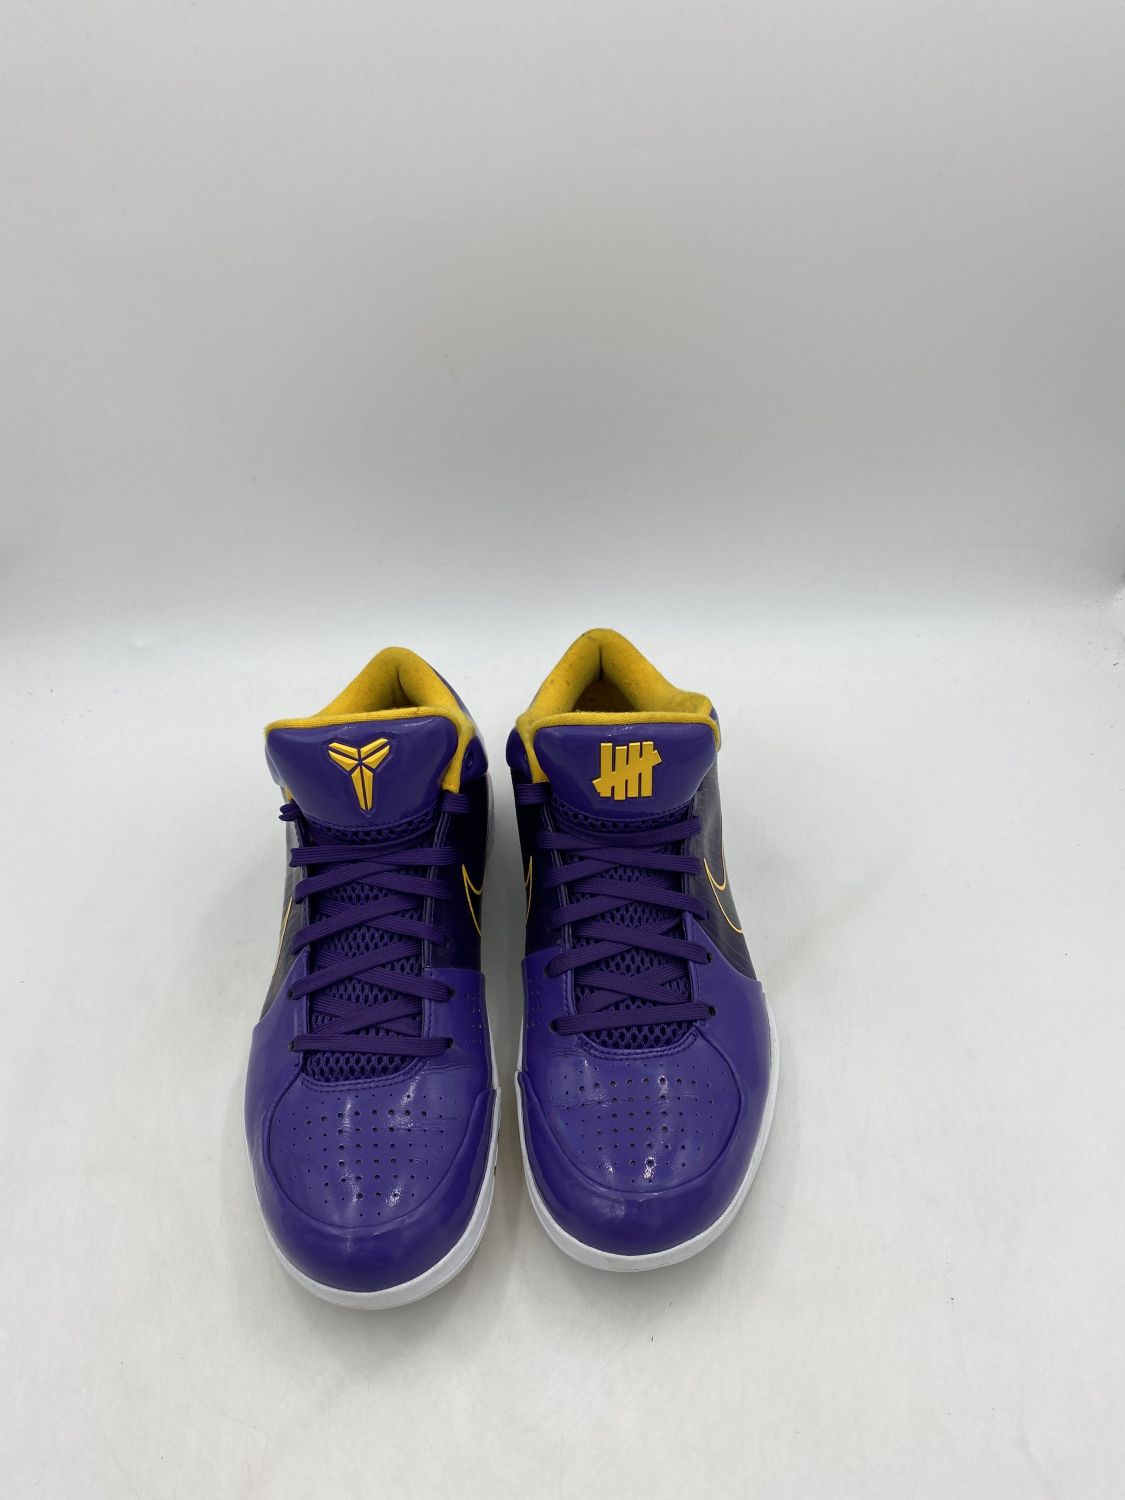 Nike Undefeated x Kobe 4 Protro 'Court Purple